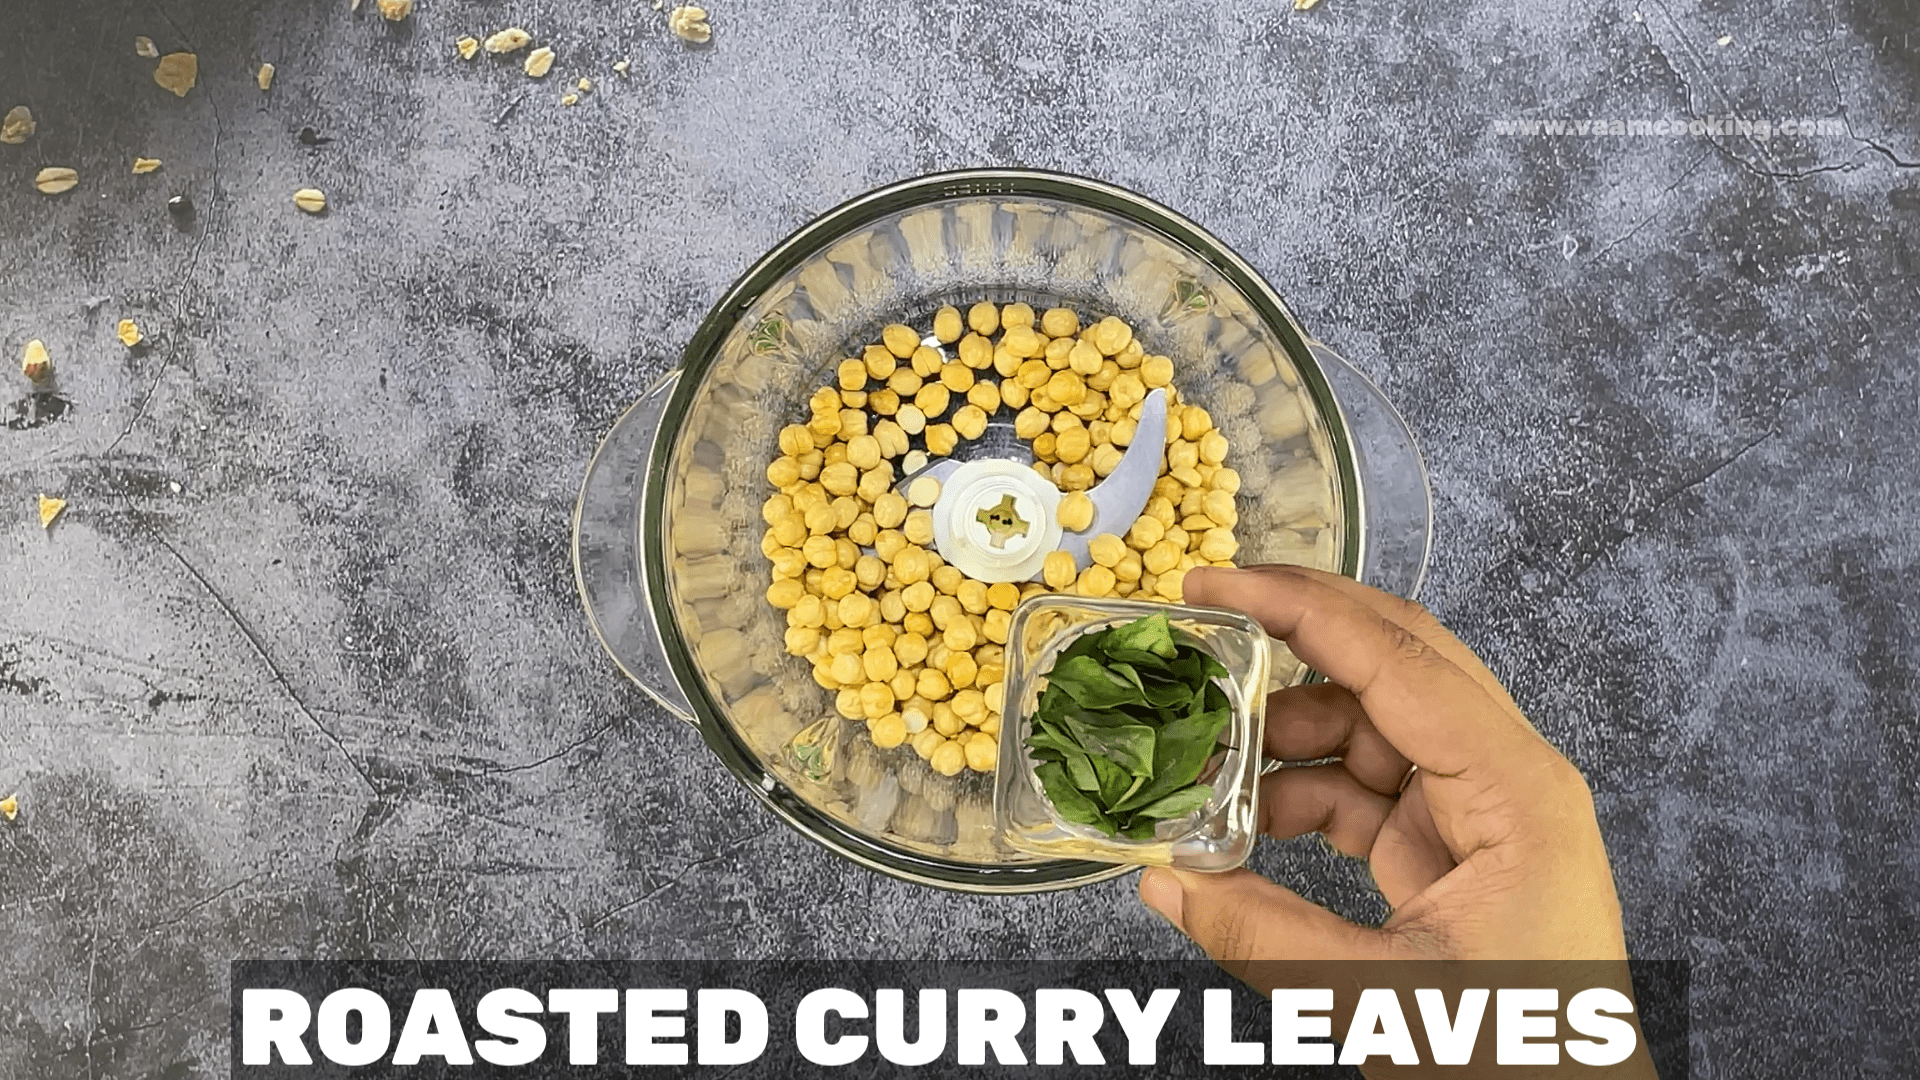 Putani-Chutney-roasted curry leaves